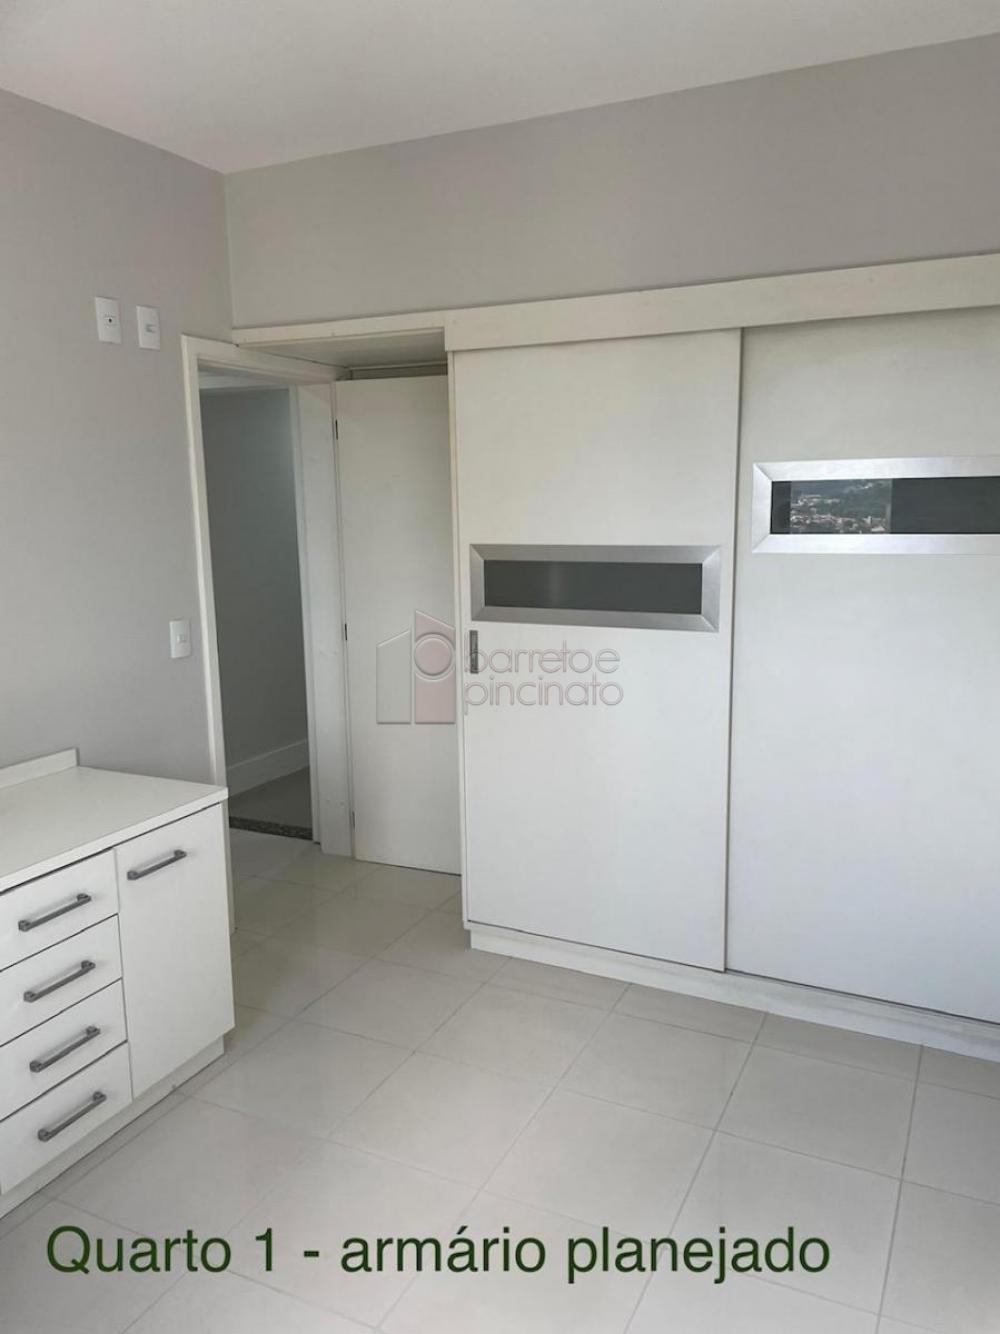 Comprar Apartamento / Padrão em Jundiaí R$ 745.000,00 - Foto 3